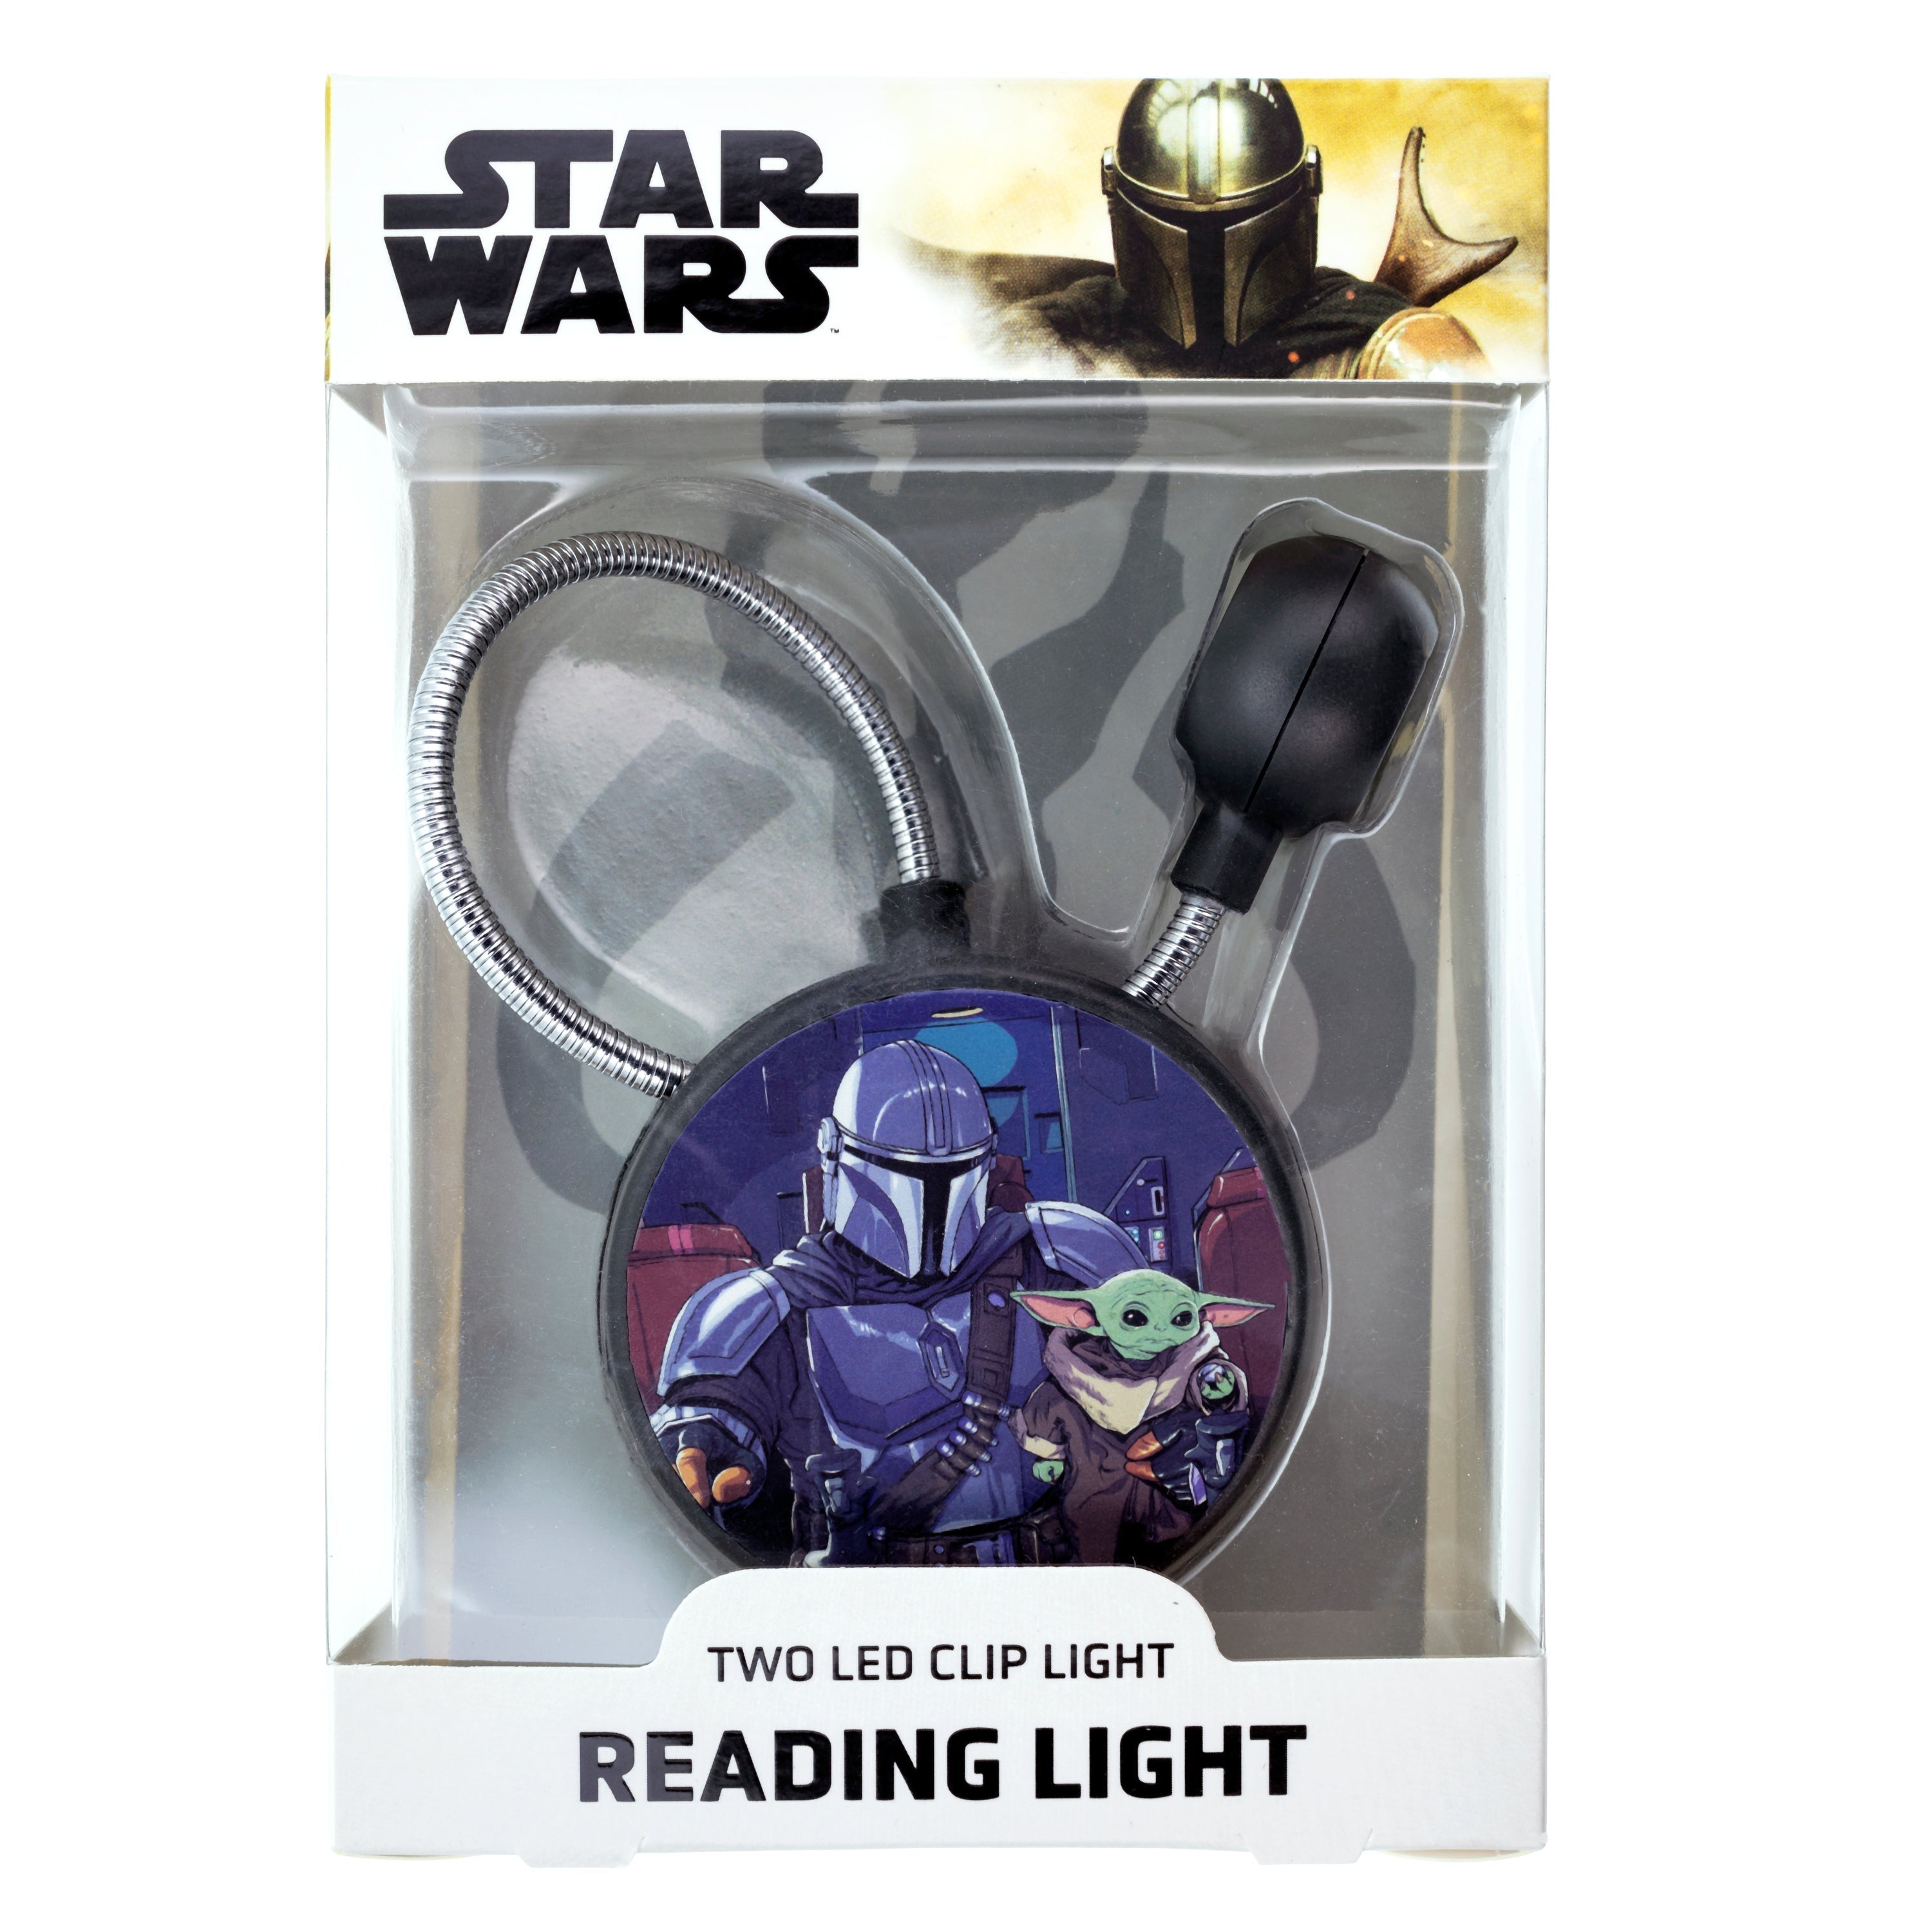 Star Wars LED Reading Light